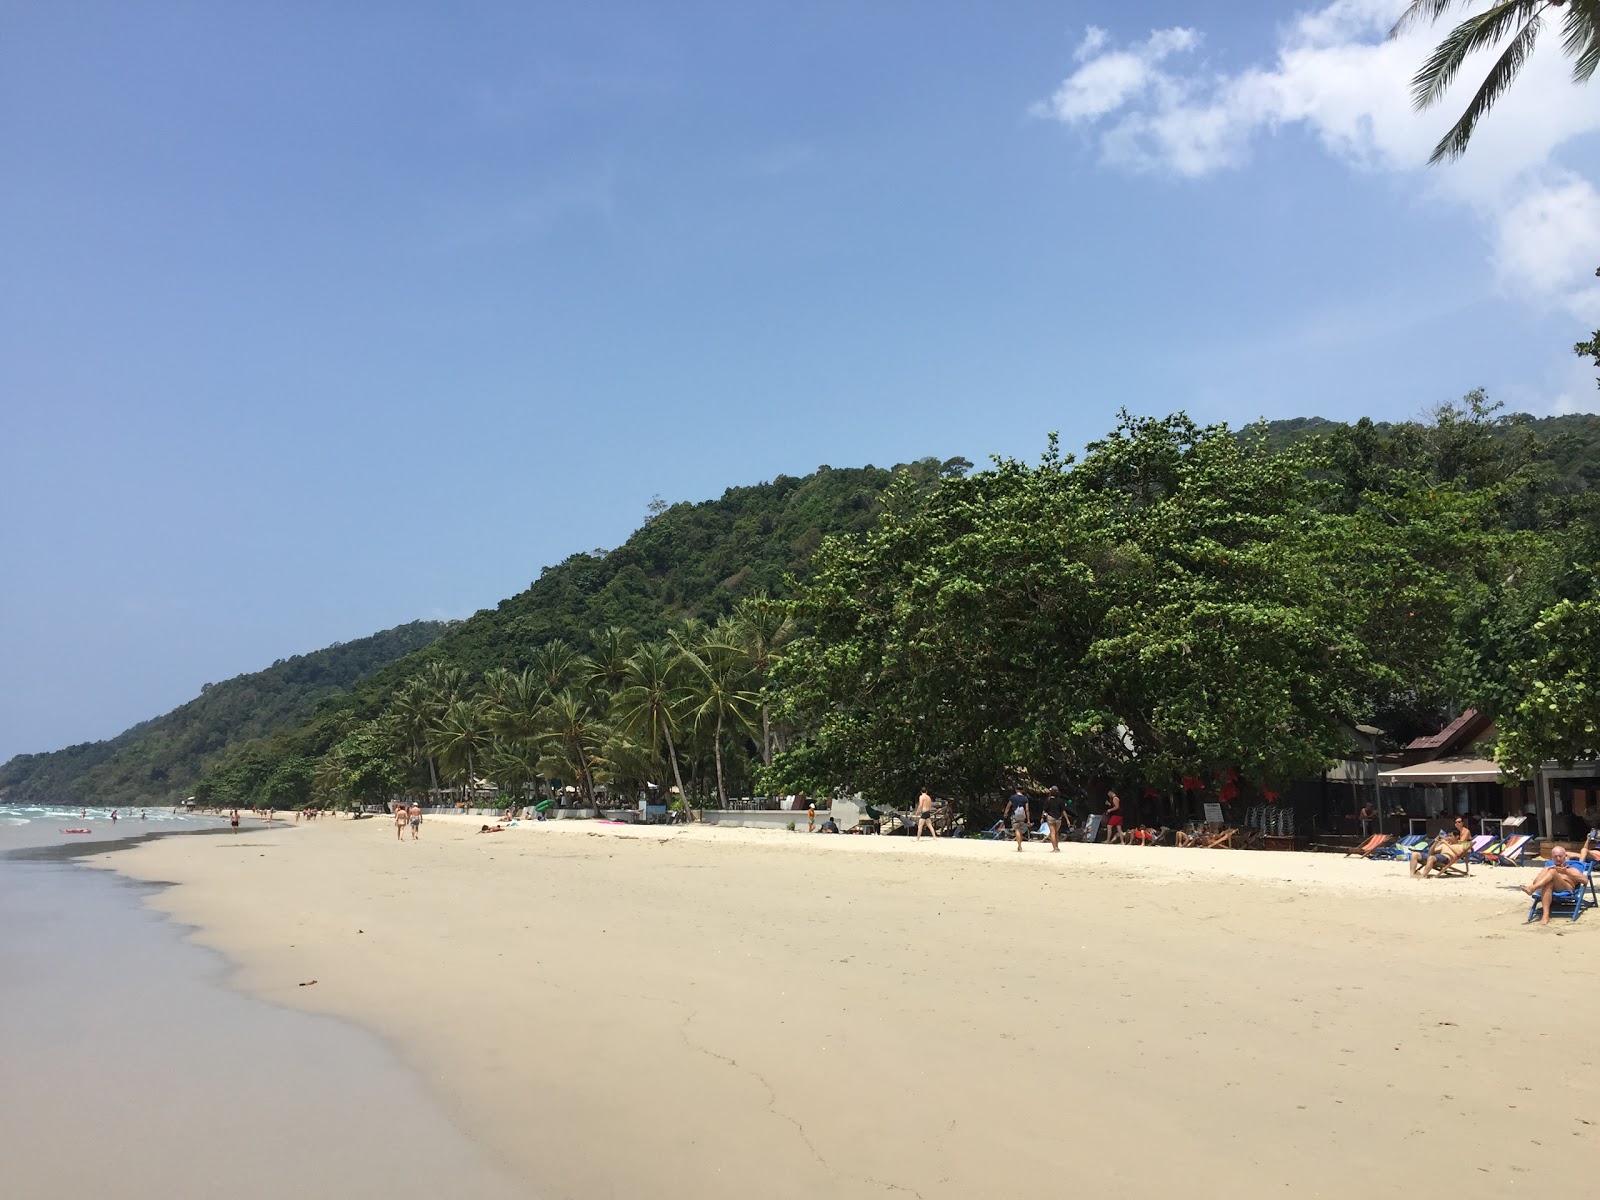 Zdjęcie White Sand beach - popularne miejsce wśród znawców relaksu